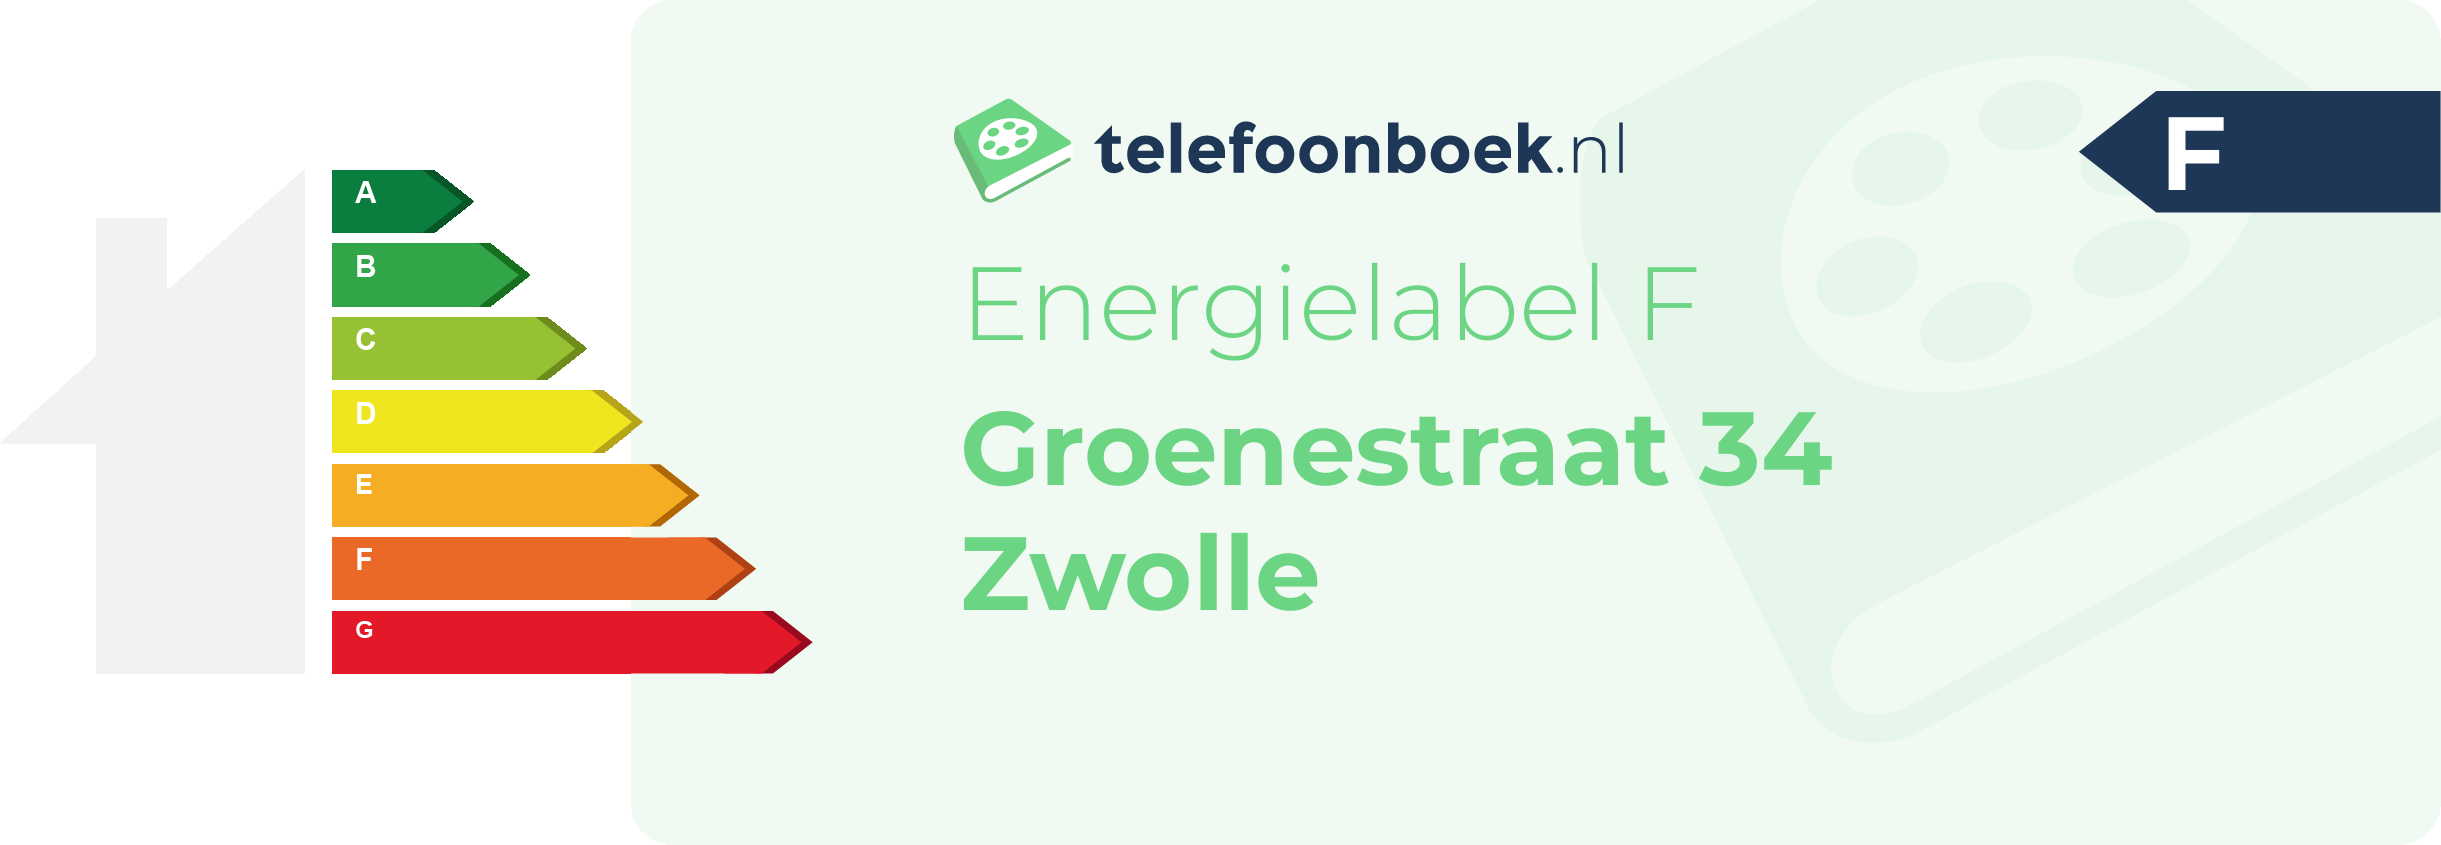 Energielabel Groenestraat 34 Zwolle